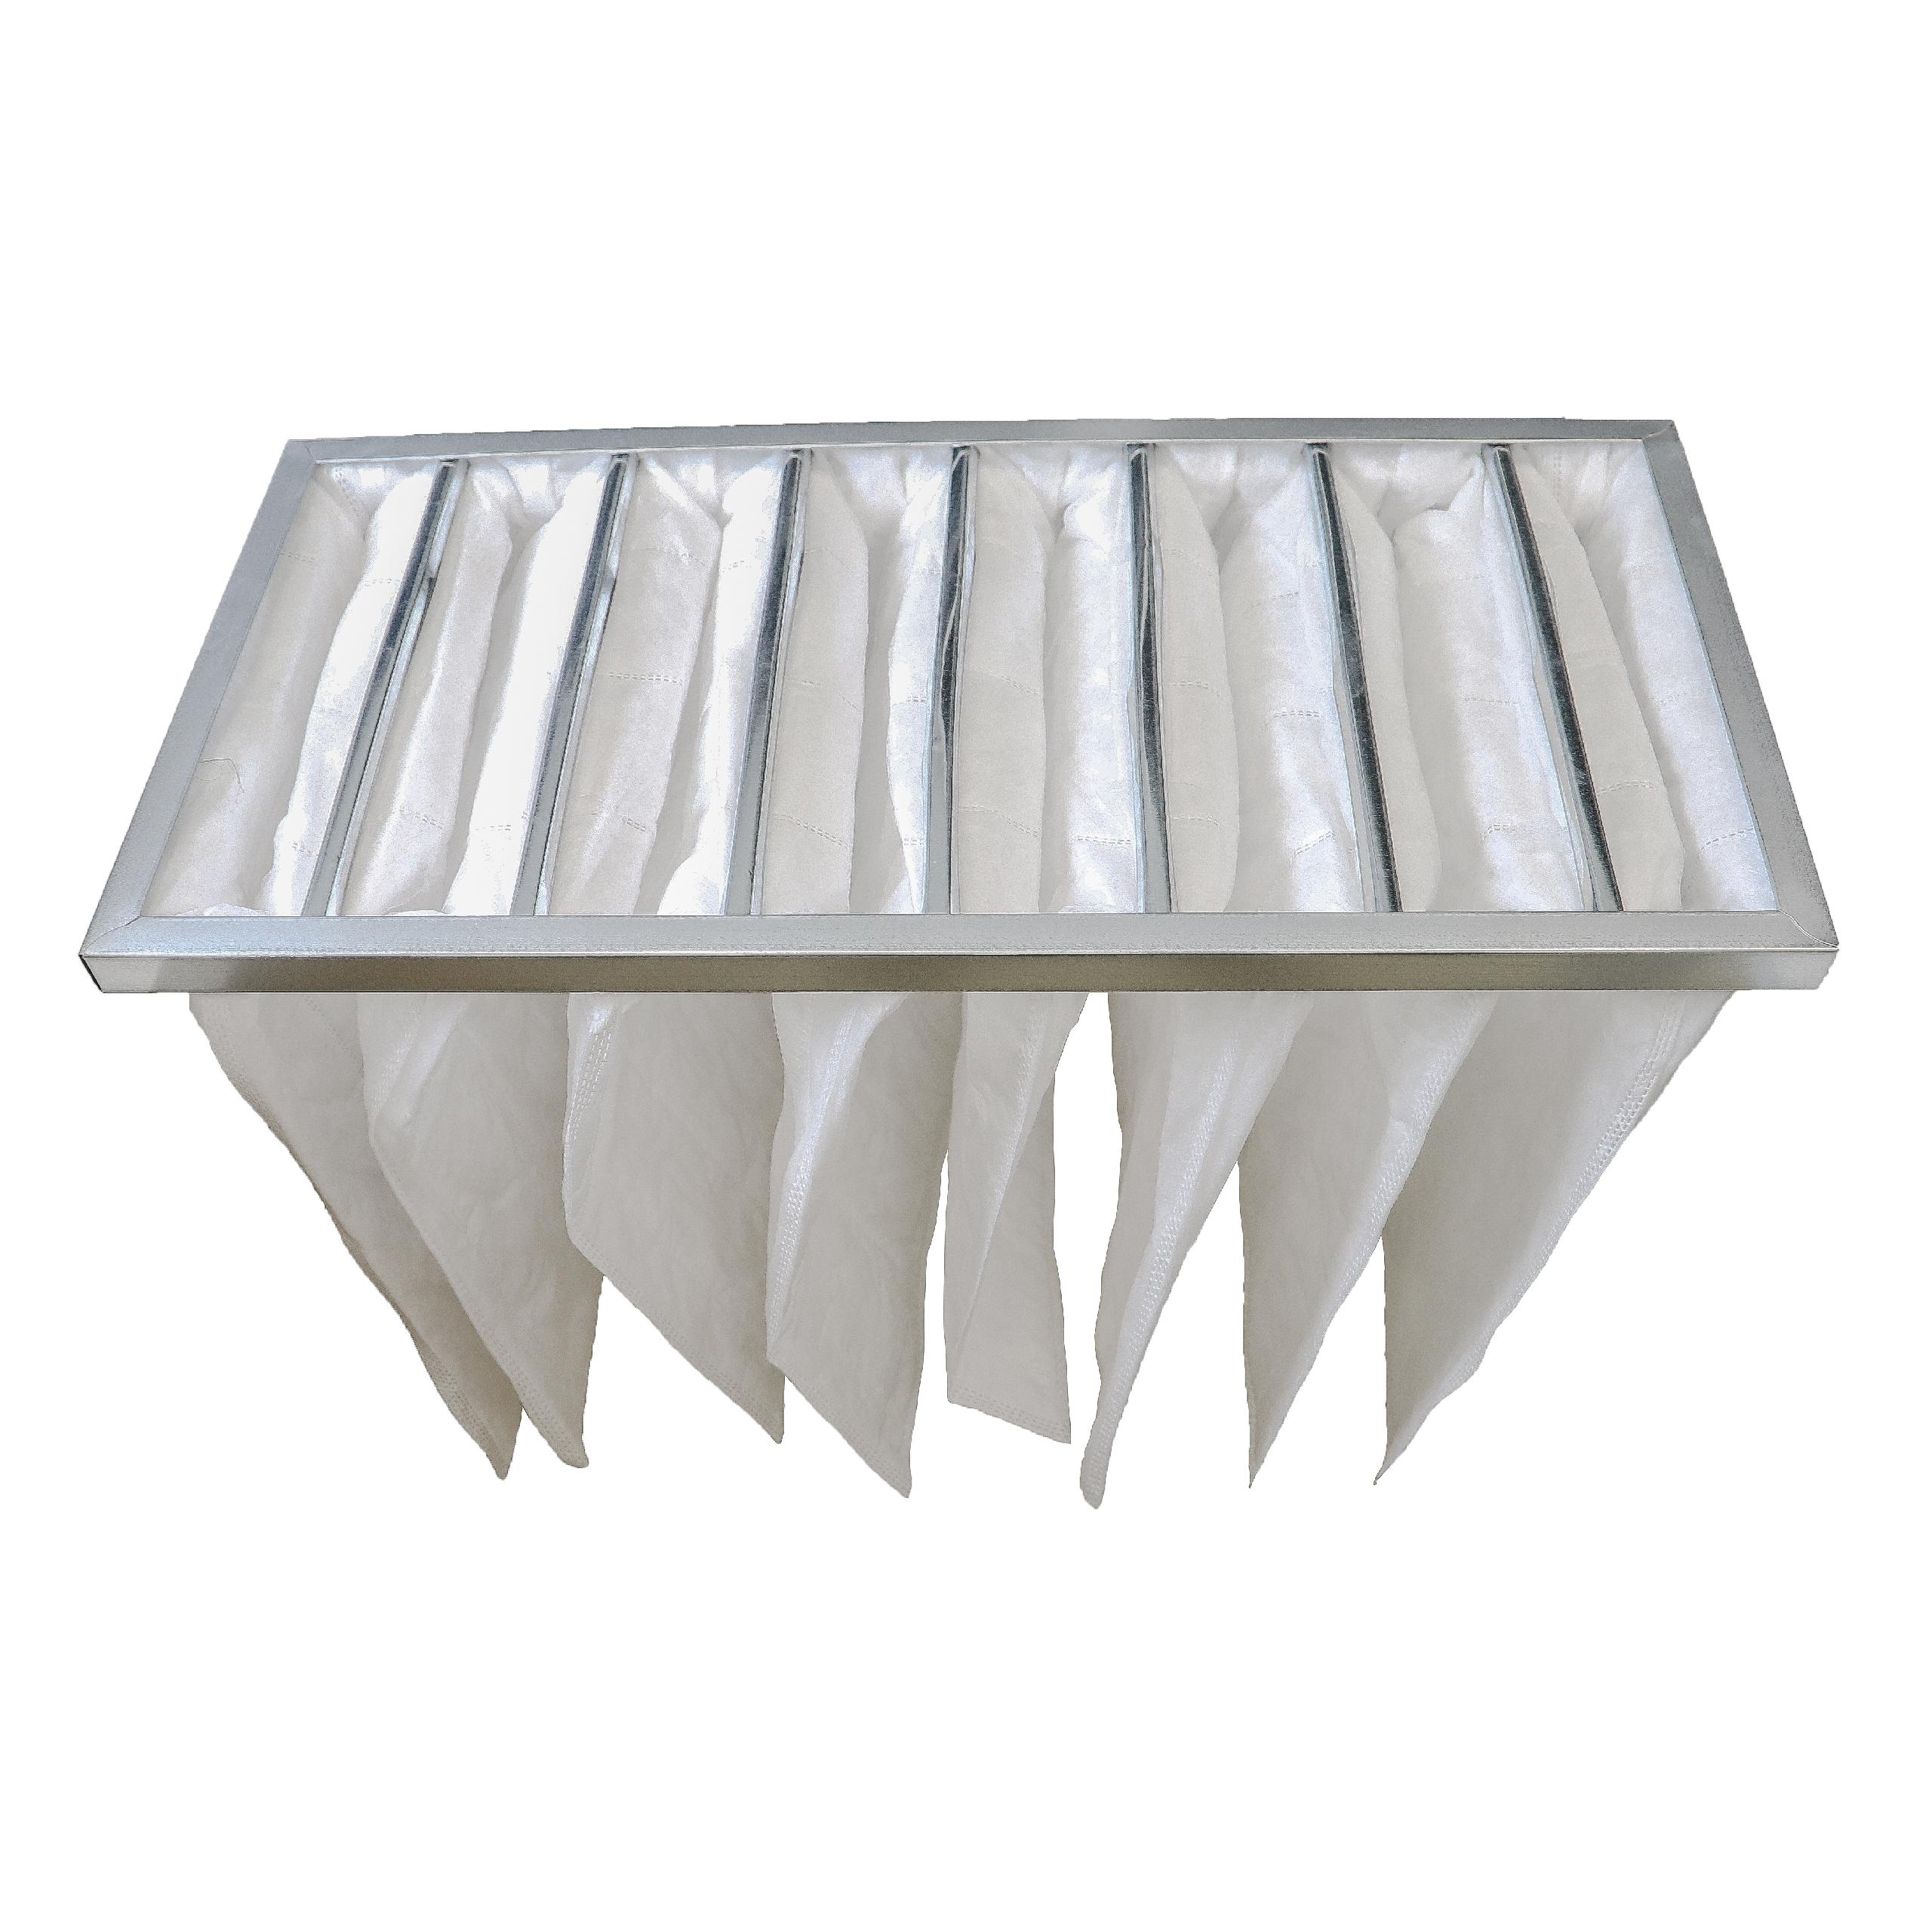 Borsa filtrante per impianti di condizionamento e ventilazione - 38 x 29,5 x 59,2 cm